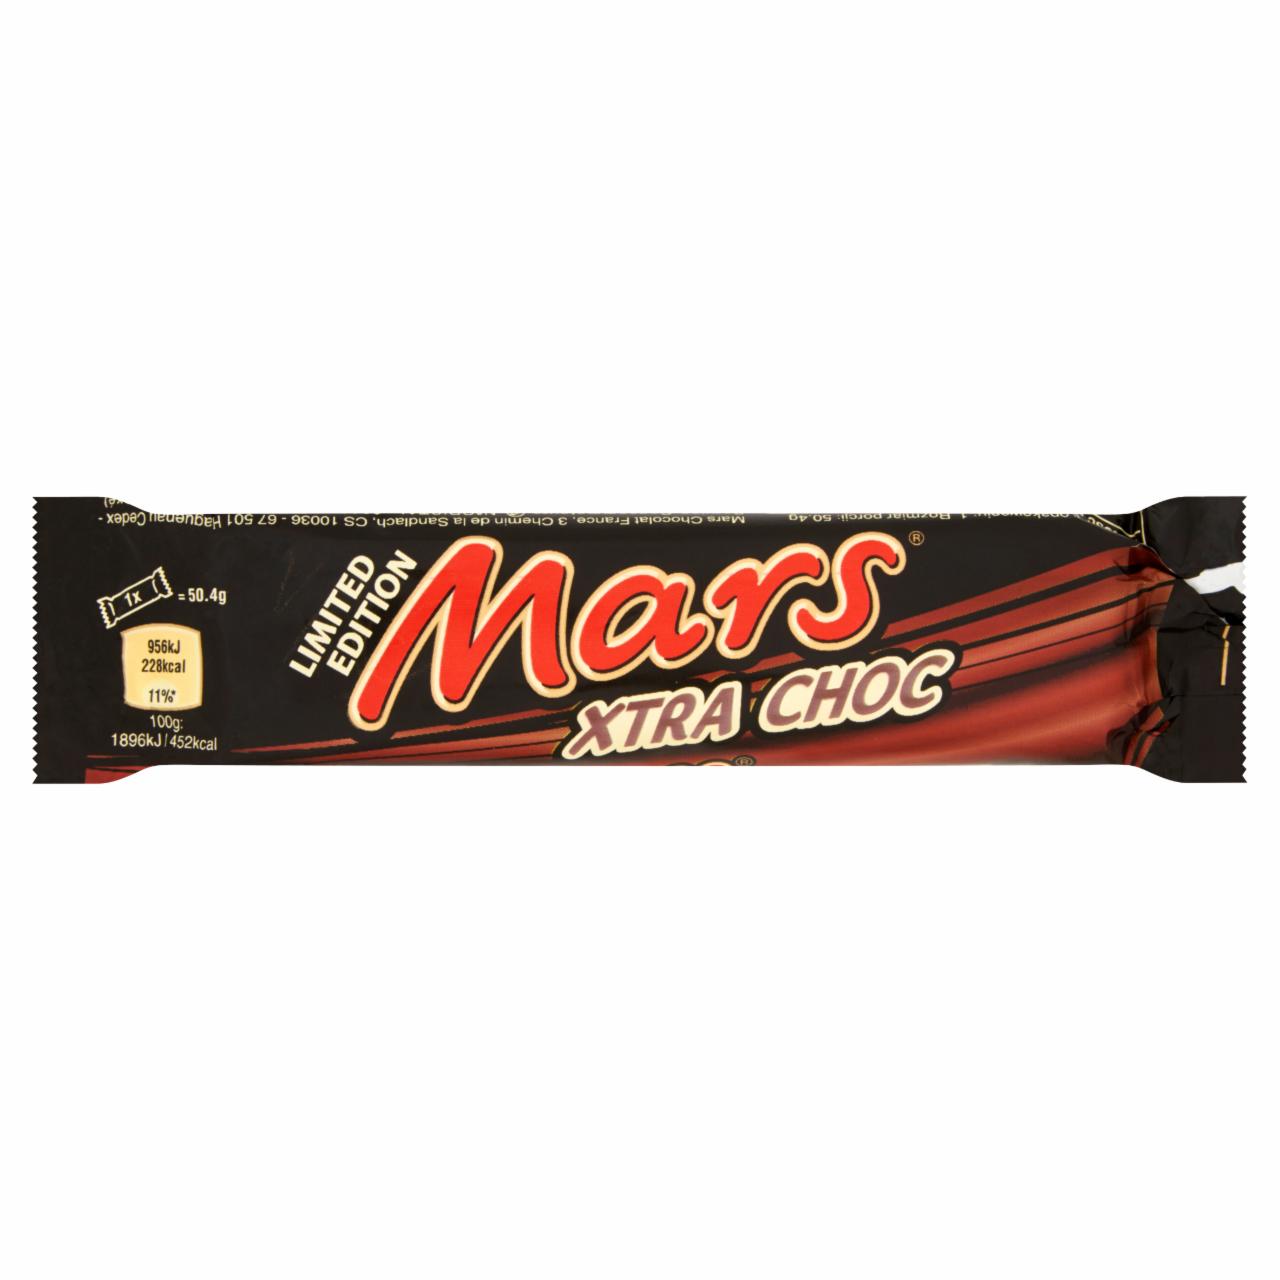 Zdjęcia - Mars Xtra Choc Baton z nugatowym nadzieniem oblany karmelem i czekoladą 50,4 g